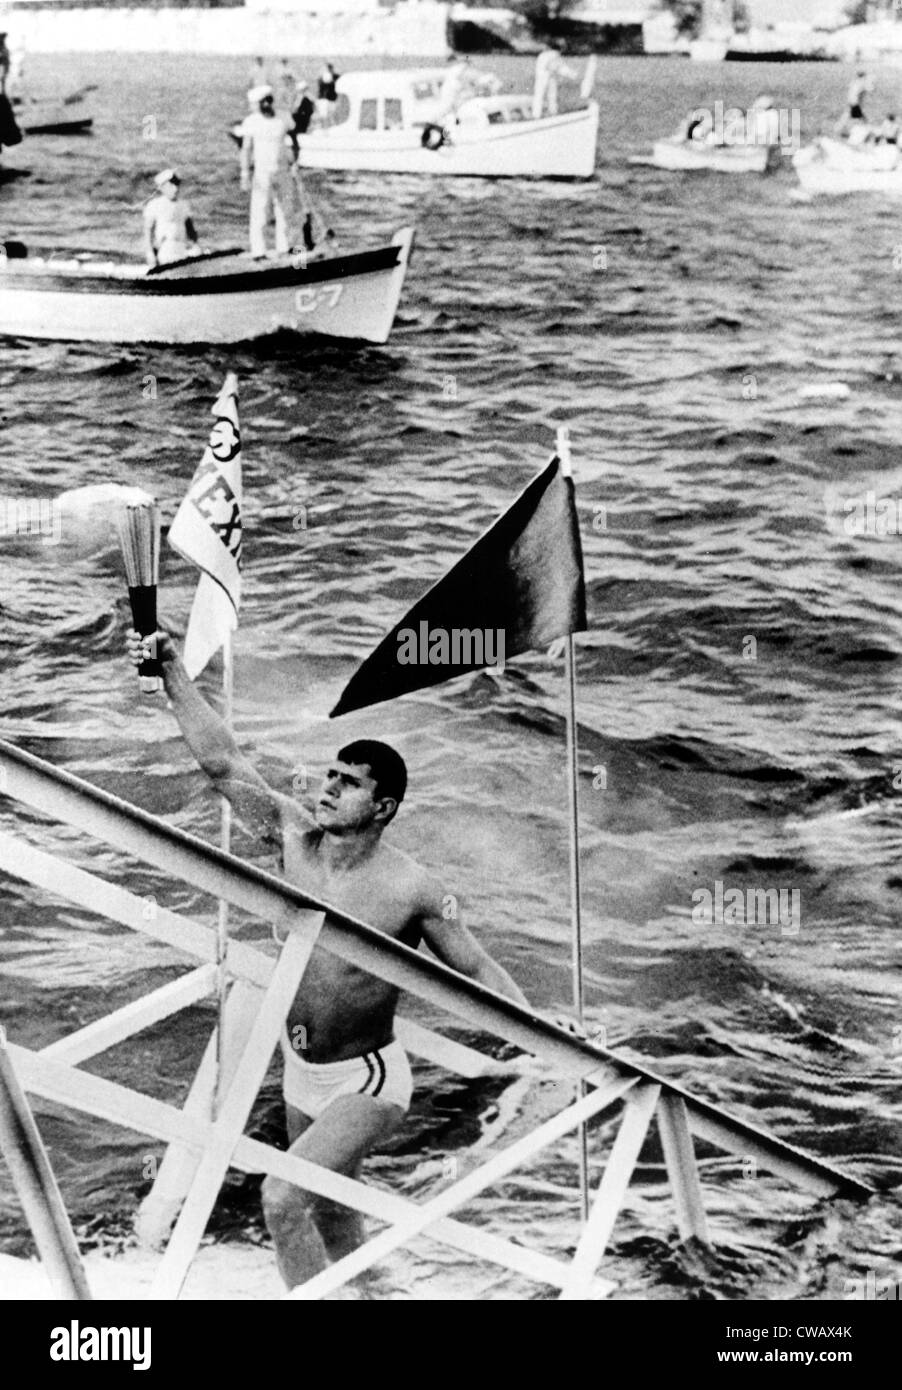 Juegos Olímpicos de 1968, la Antorcha Olímpica alcanza el suelo mexicano, Veracruz, México, 10-06-1968. Cortesía: CSU Archives / Everett Collection Foto de stock